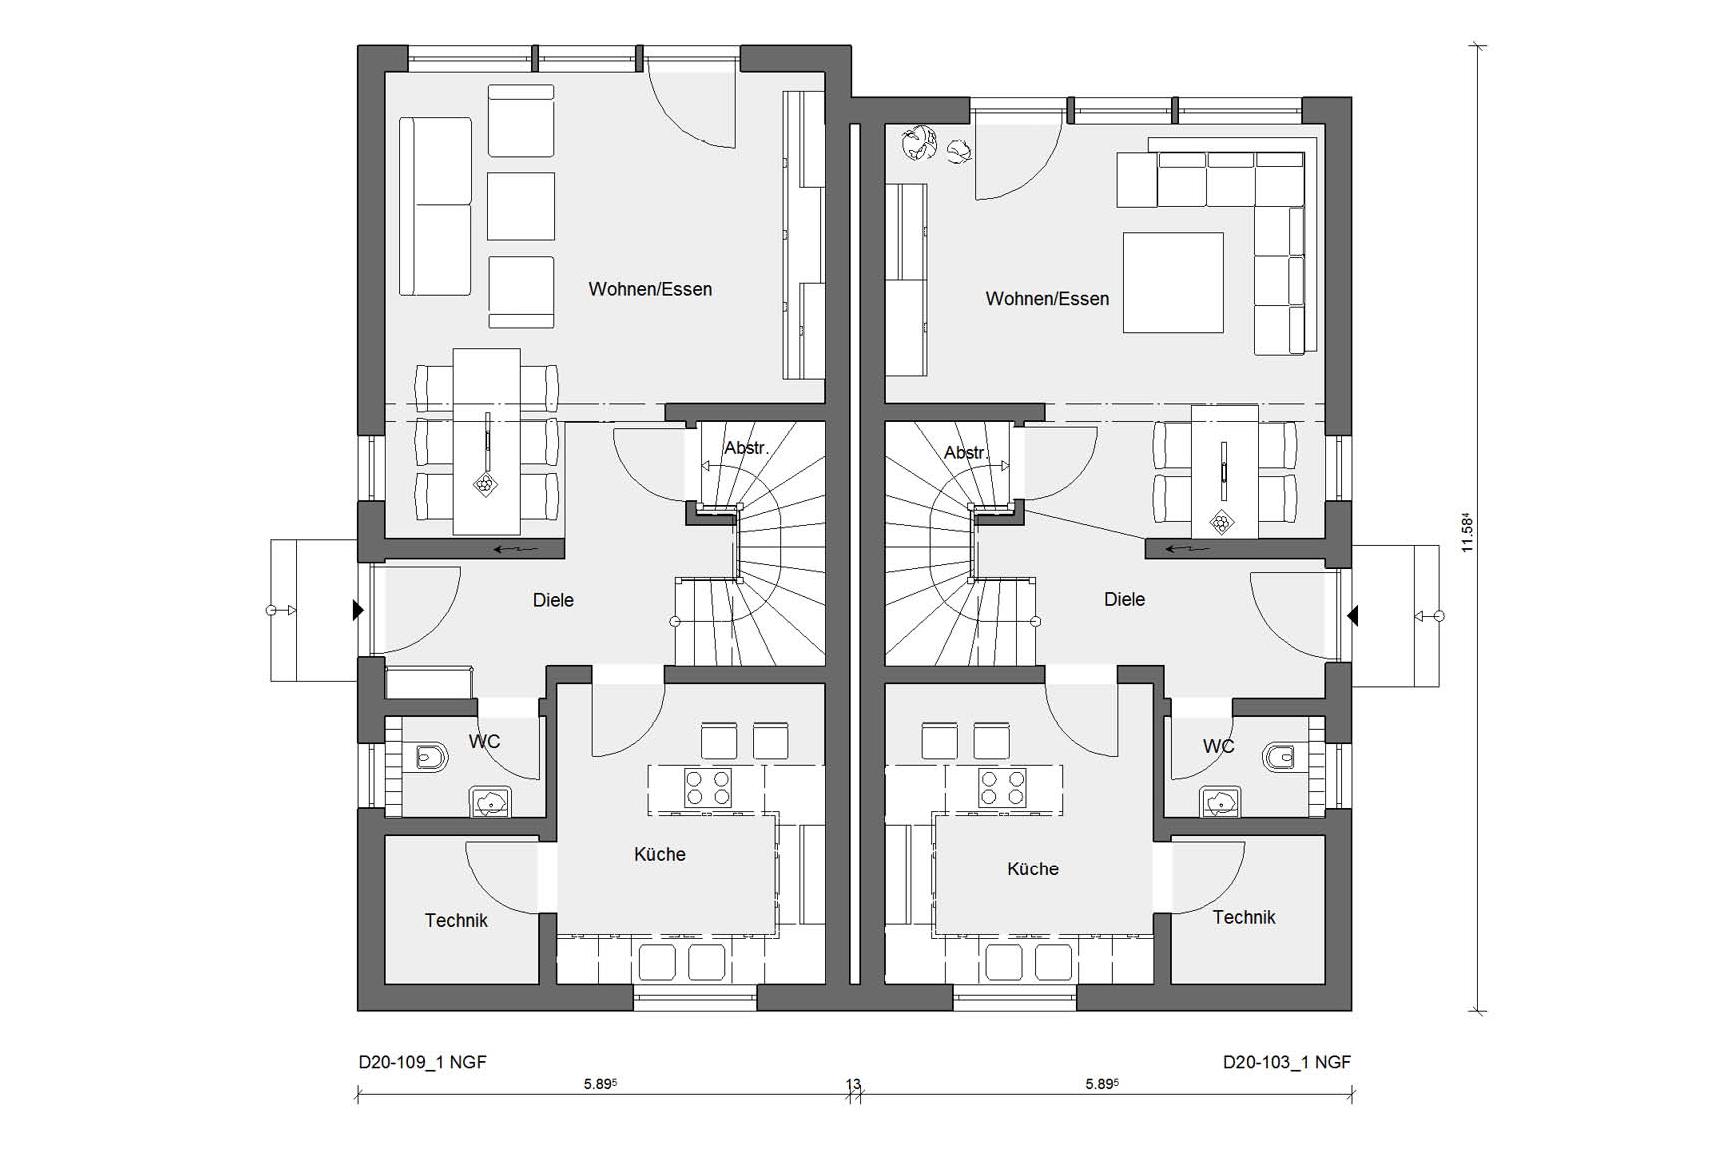 Plan d'étage rez-de-chaussée D 20-109.1/D 20-103.1 Maison jumelée décalée